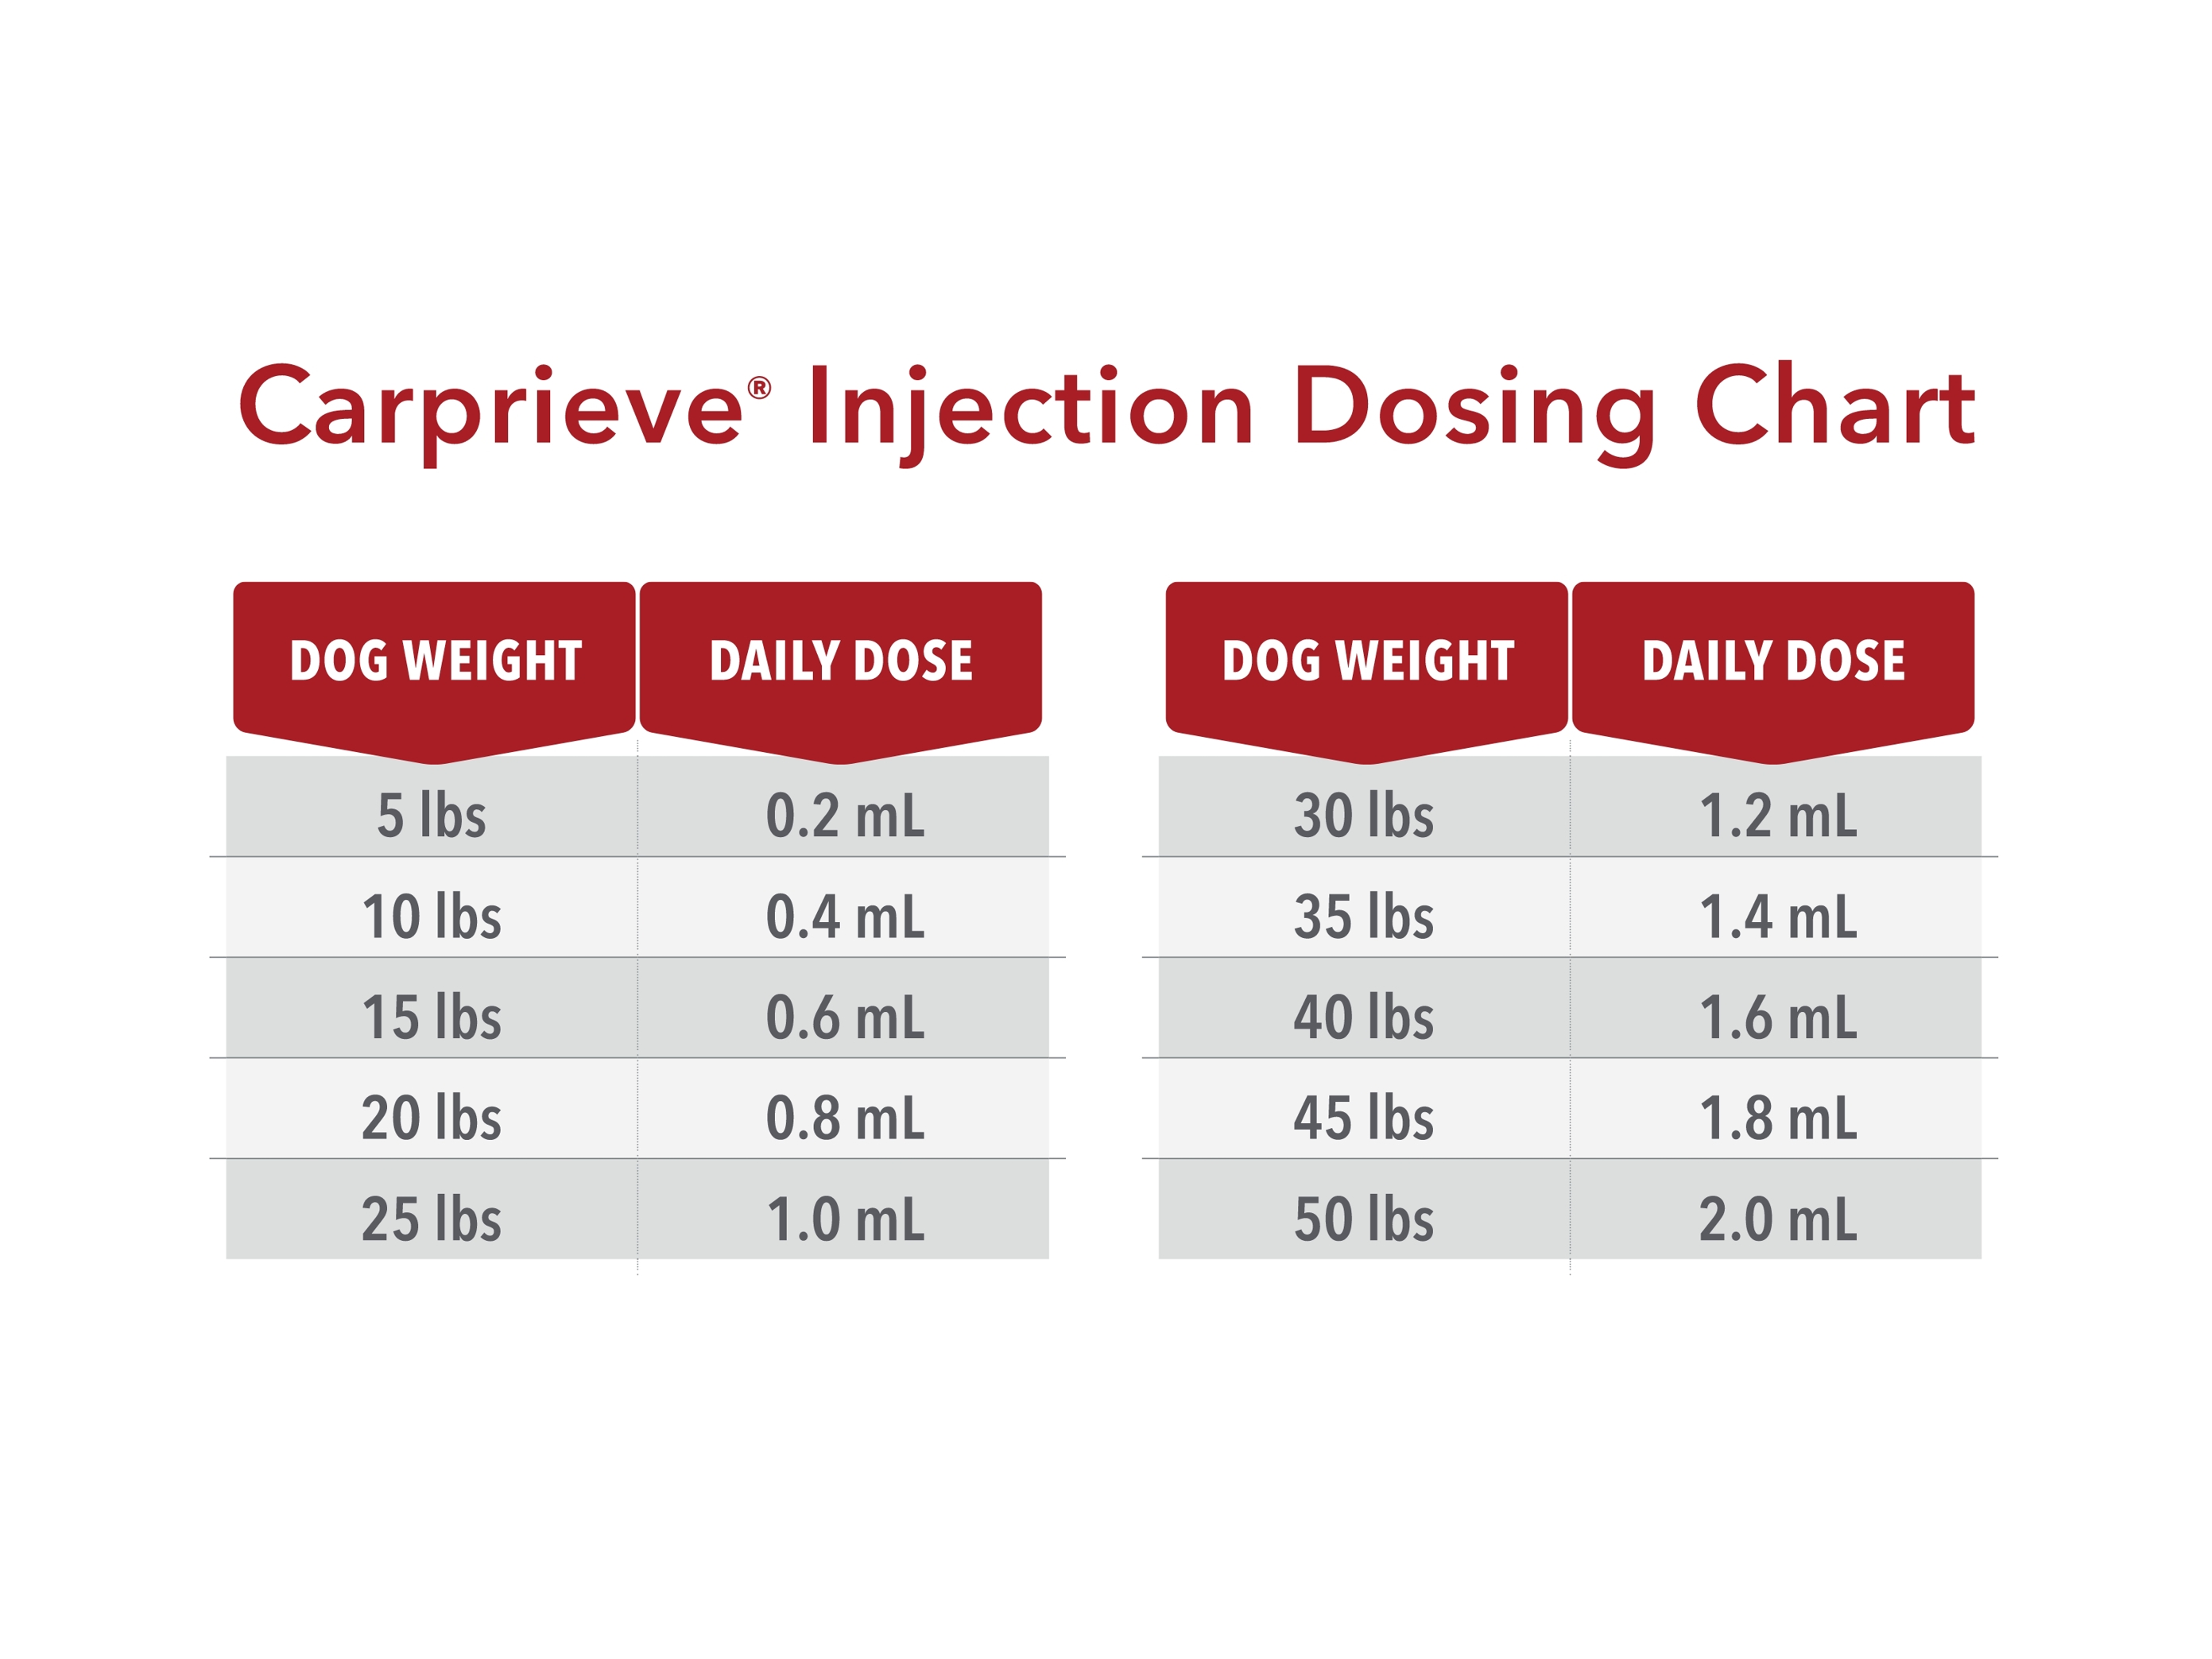 Carprieve Injection Dosing Chart